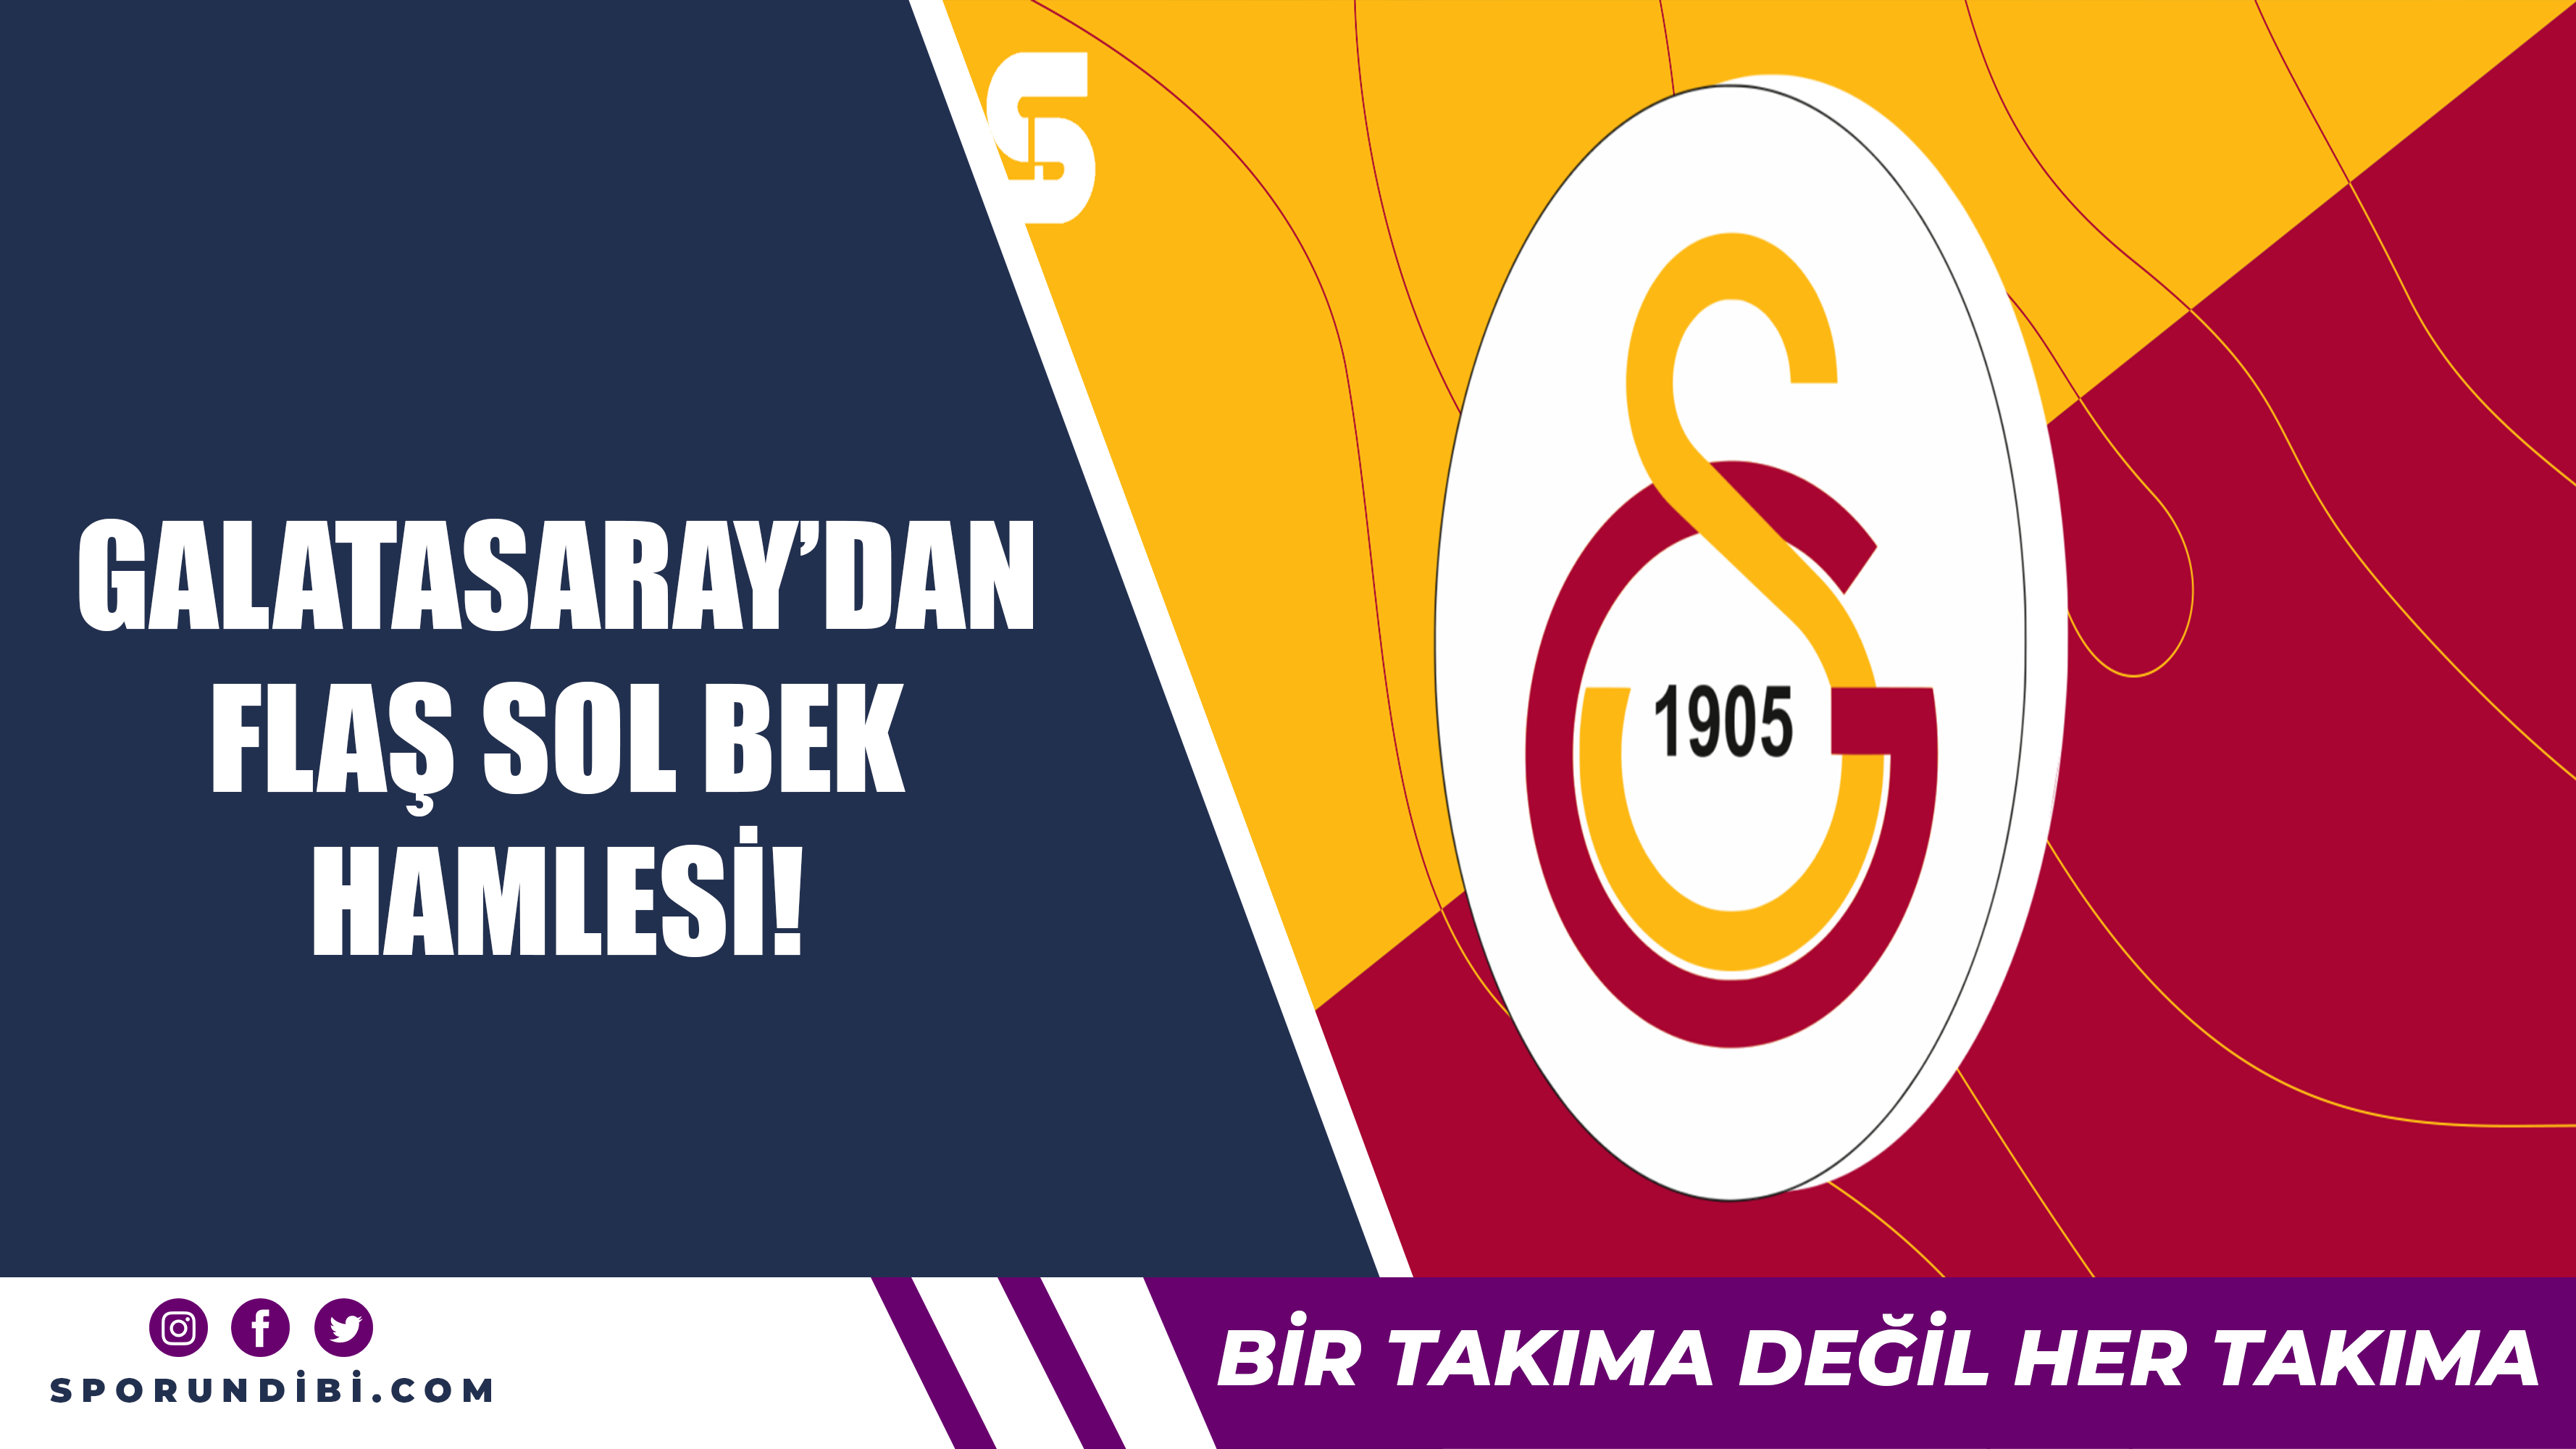 Galatasaray'dan flaş sol bek hamlesi!